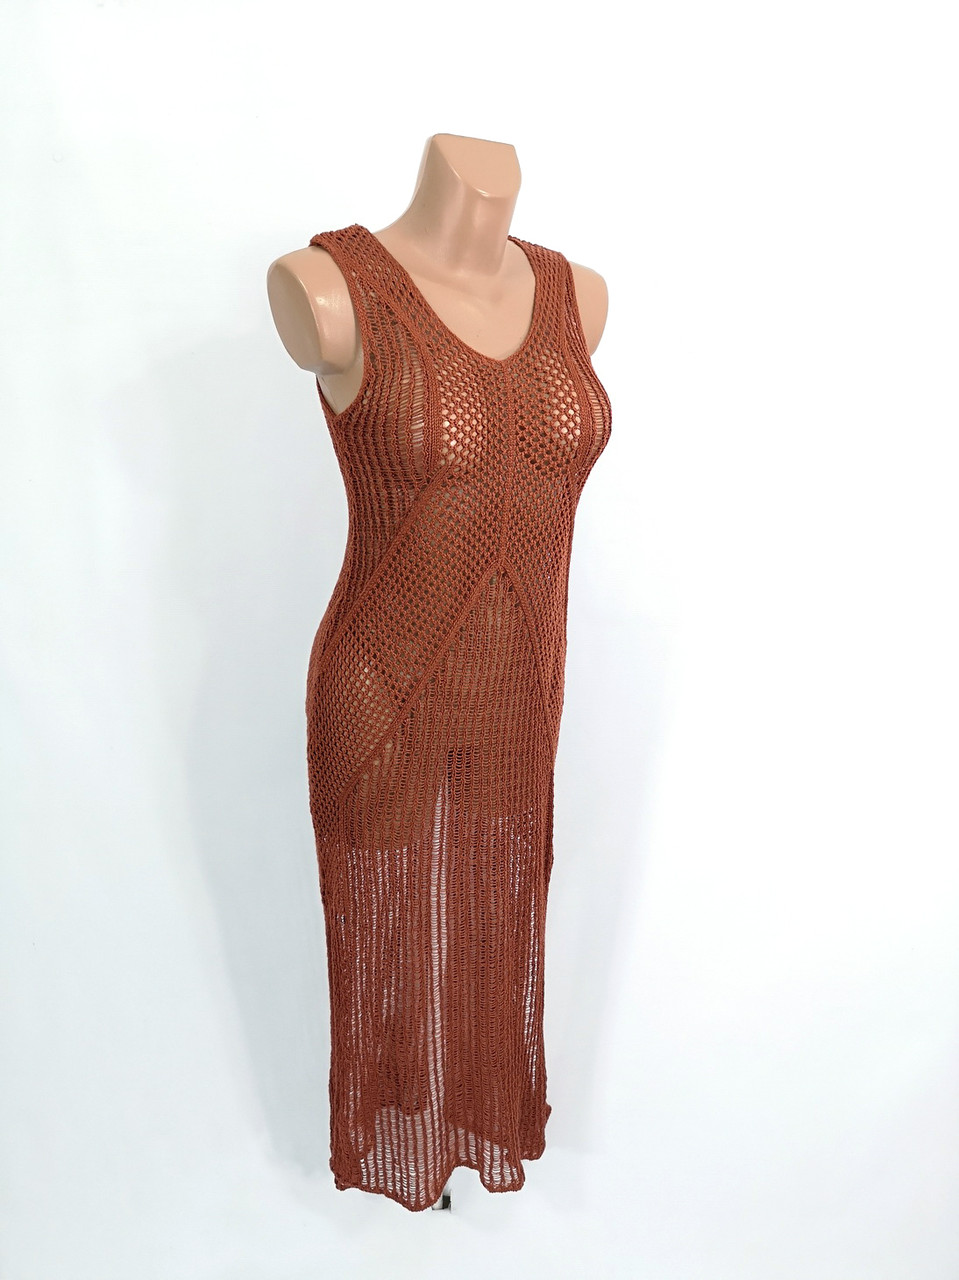 Платье сеточка Primark, длинное, Разм S (38), Отл сост